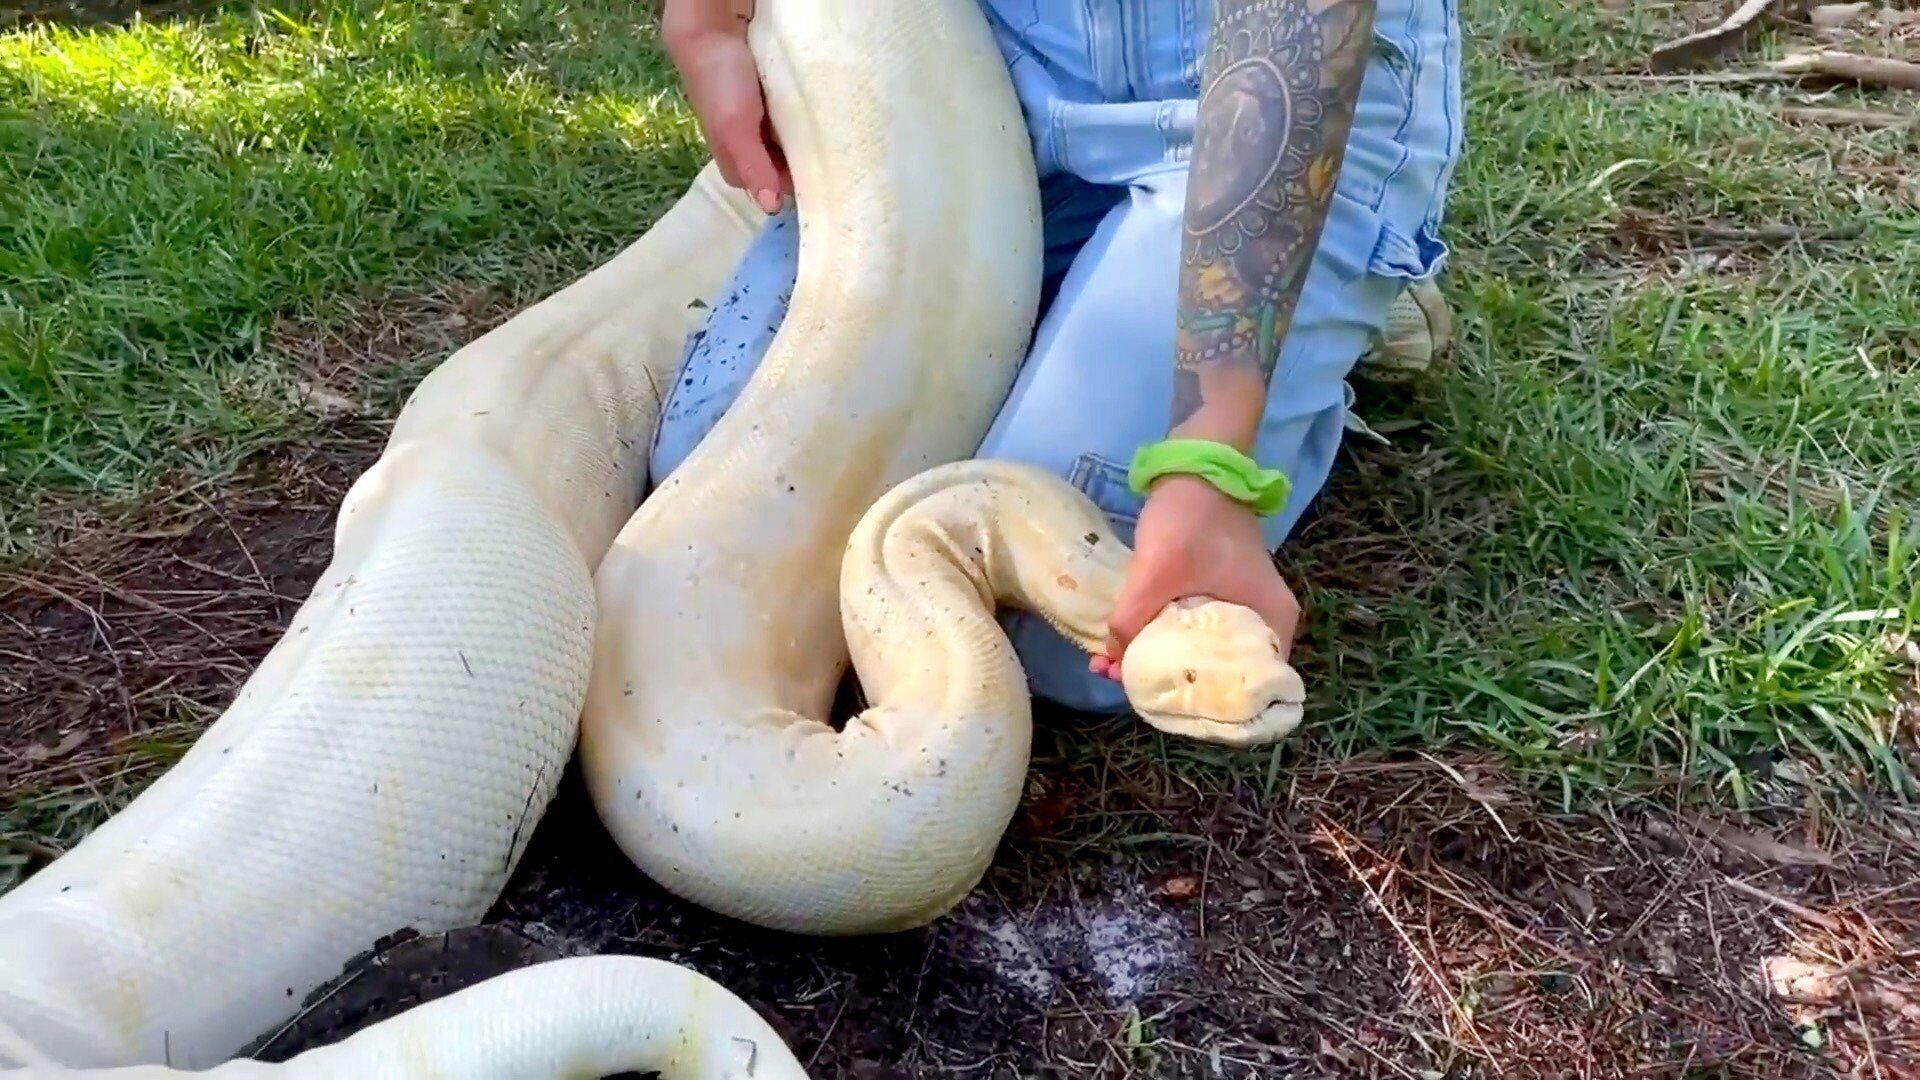 Massive albino boa constrictor discovered in Florida backyard